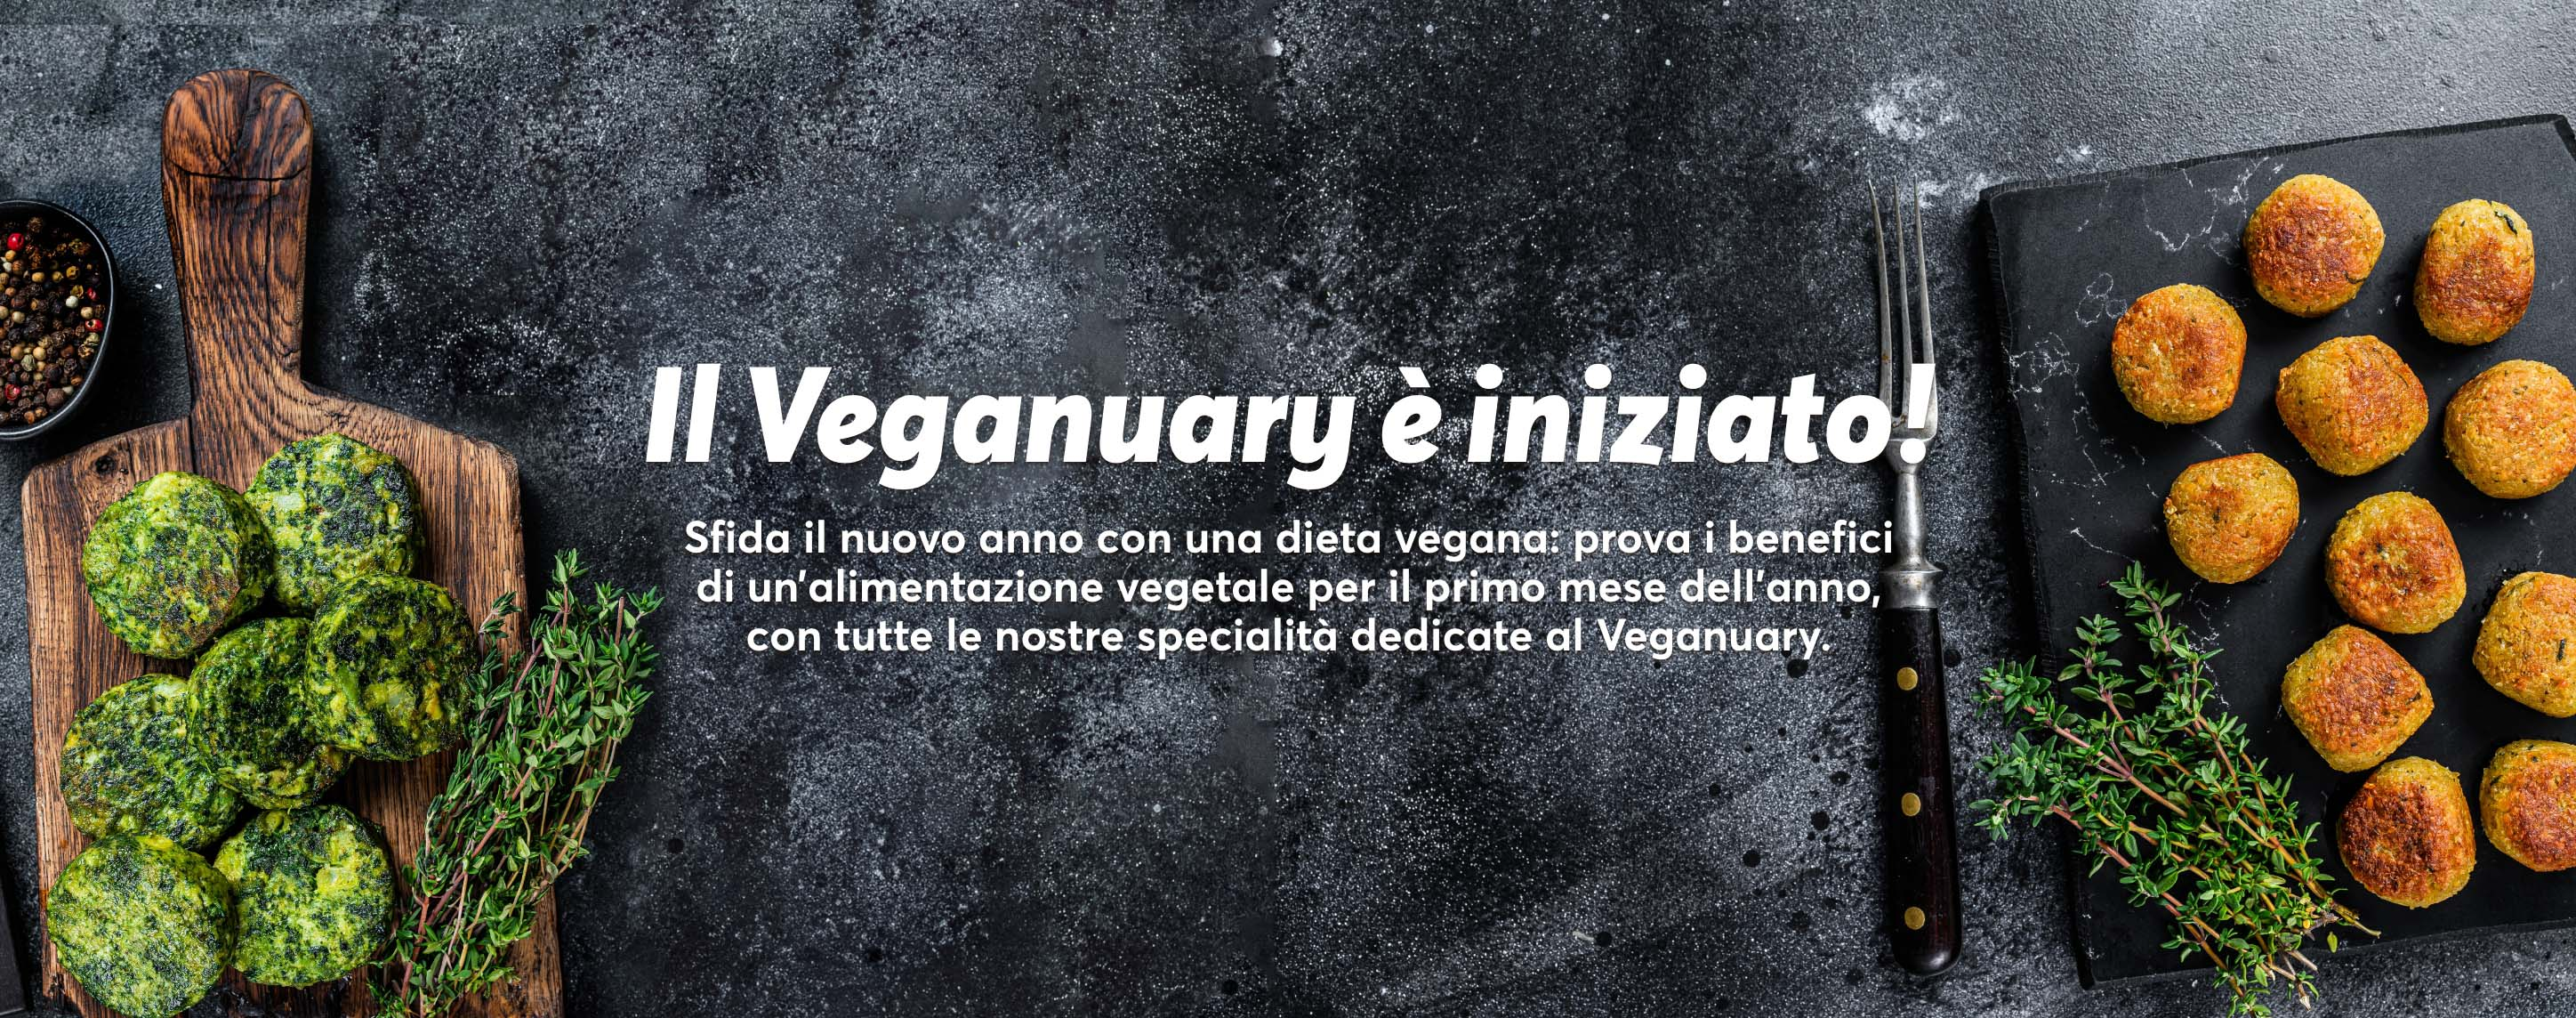 Promo veganuary_LP_desktop.png